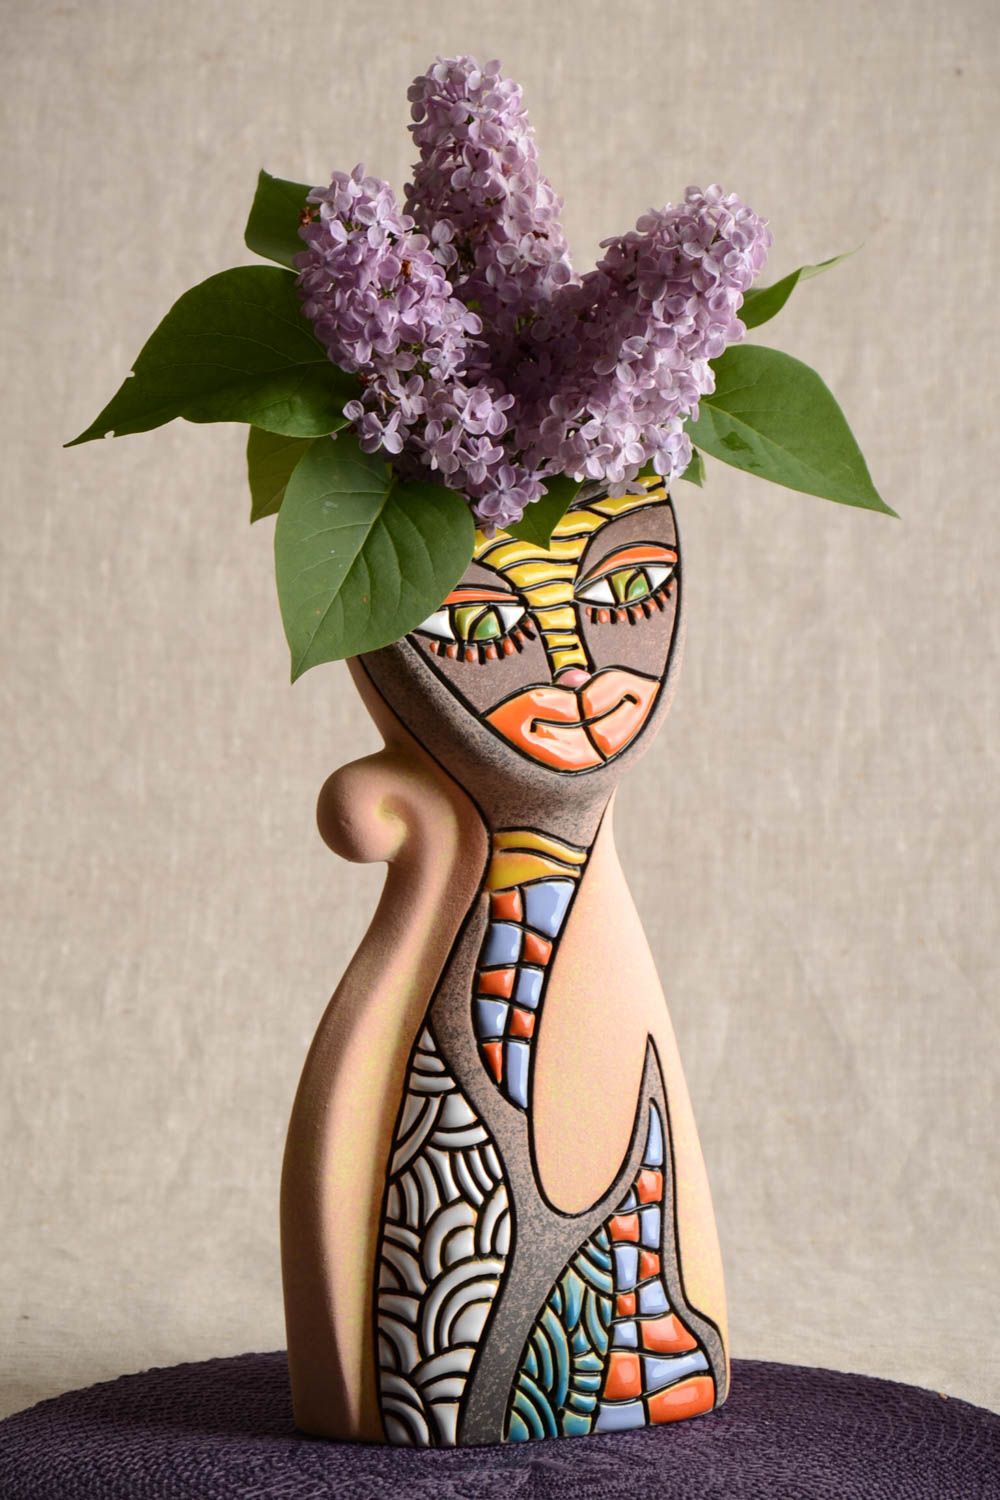 Полуфарфорофая ваза в виде кошки ручной работы расписная оригинальная 2 л фото 1